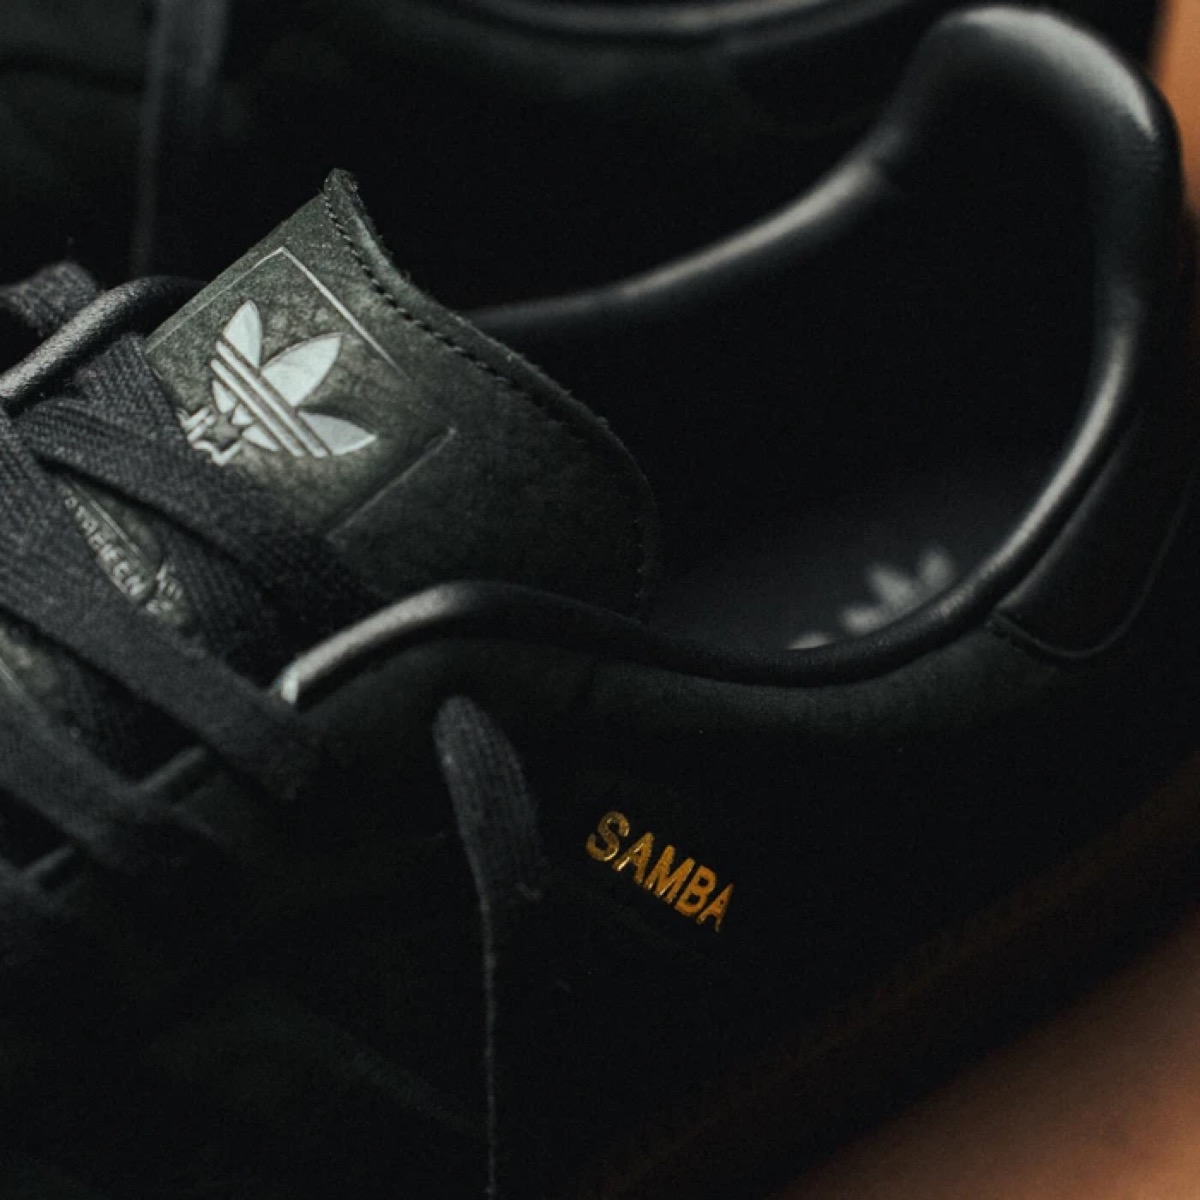 Adidas Originals Samba black 27.5cm